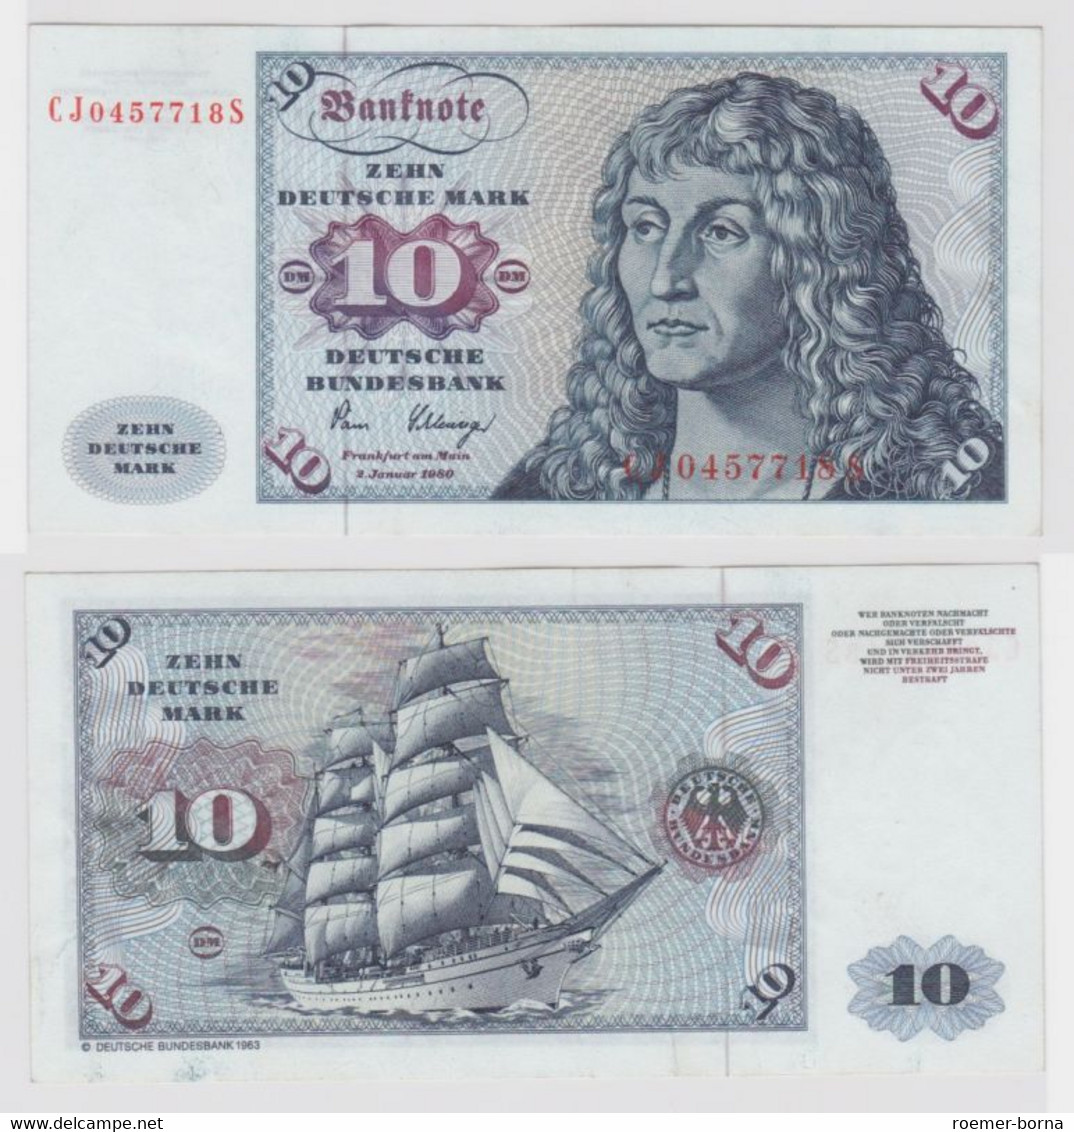 T146434 Banknote 10 DM Deutsche Mark Ro. 286a Schein 2.Jan. 1980 KN CJ 0457718 S - 10 Deutsche Mark